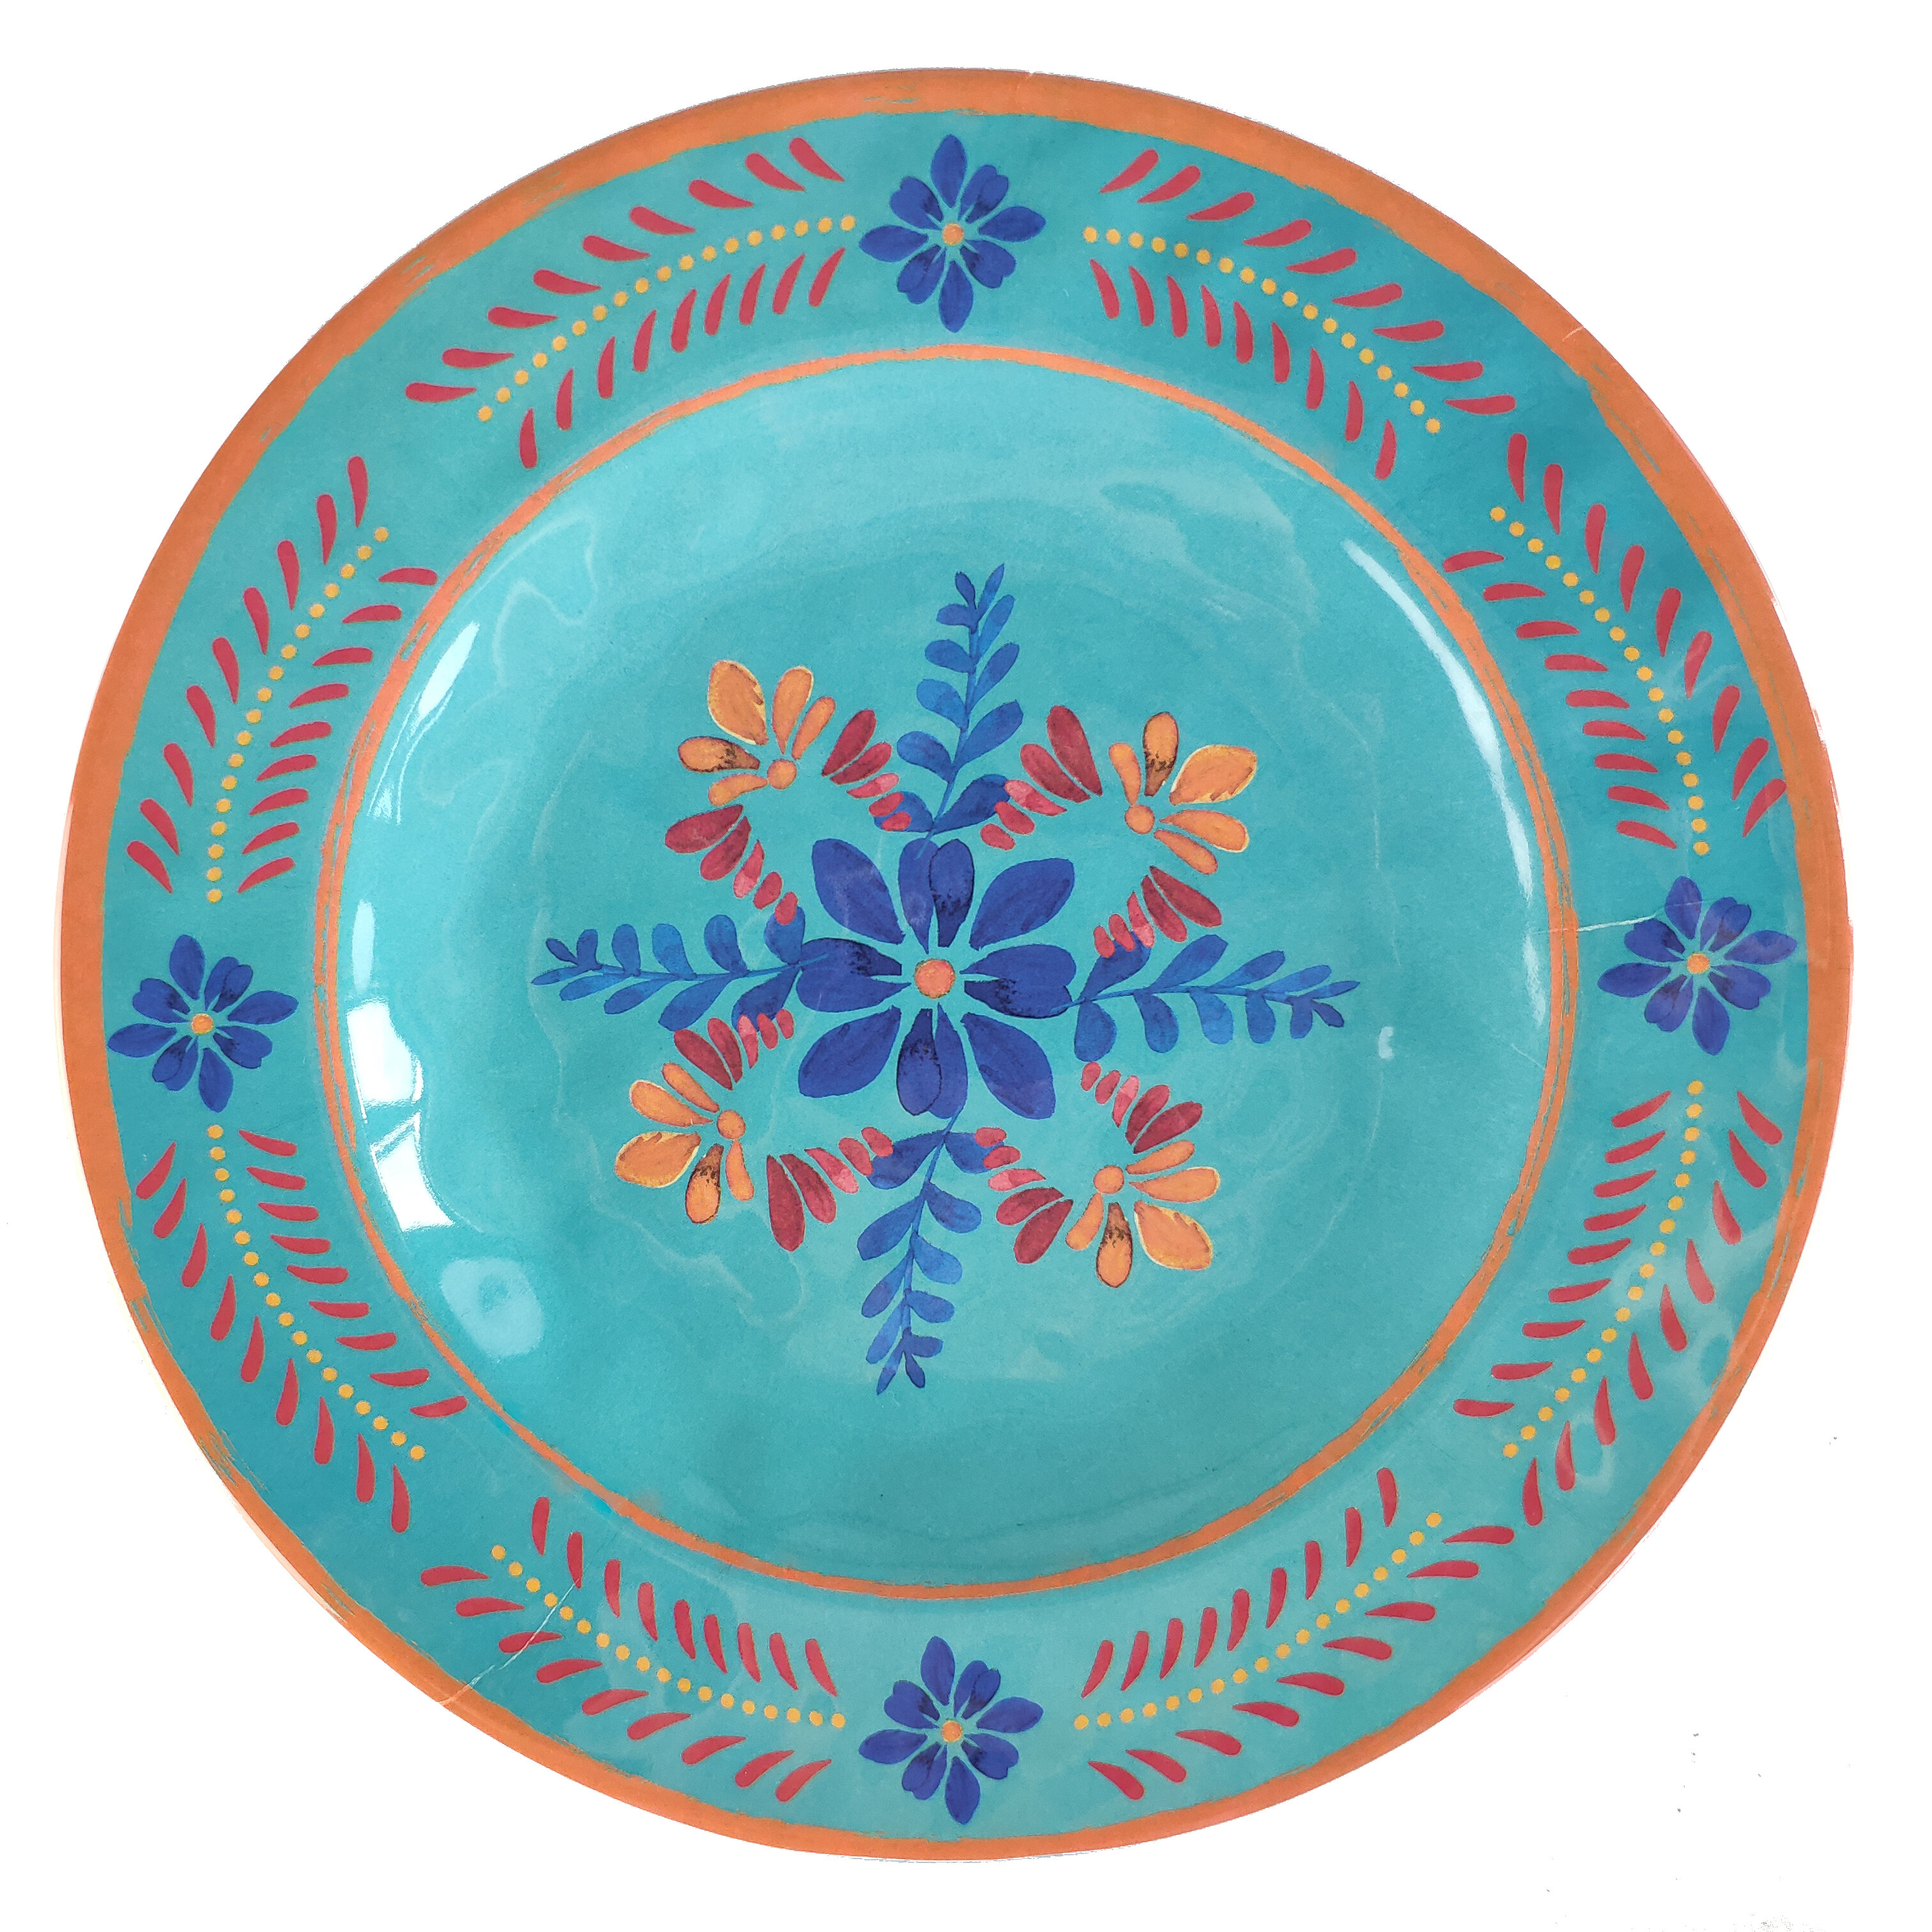 https://assets.wfcdn.com/im/17649436/compr-r85/1408/140801264/ambor-talavera-western-floral-melamine-salad-plates-set.jpg